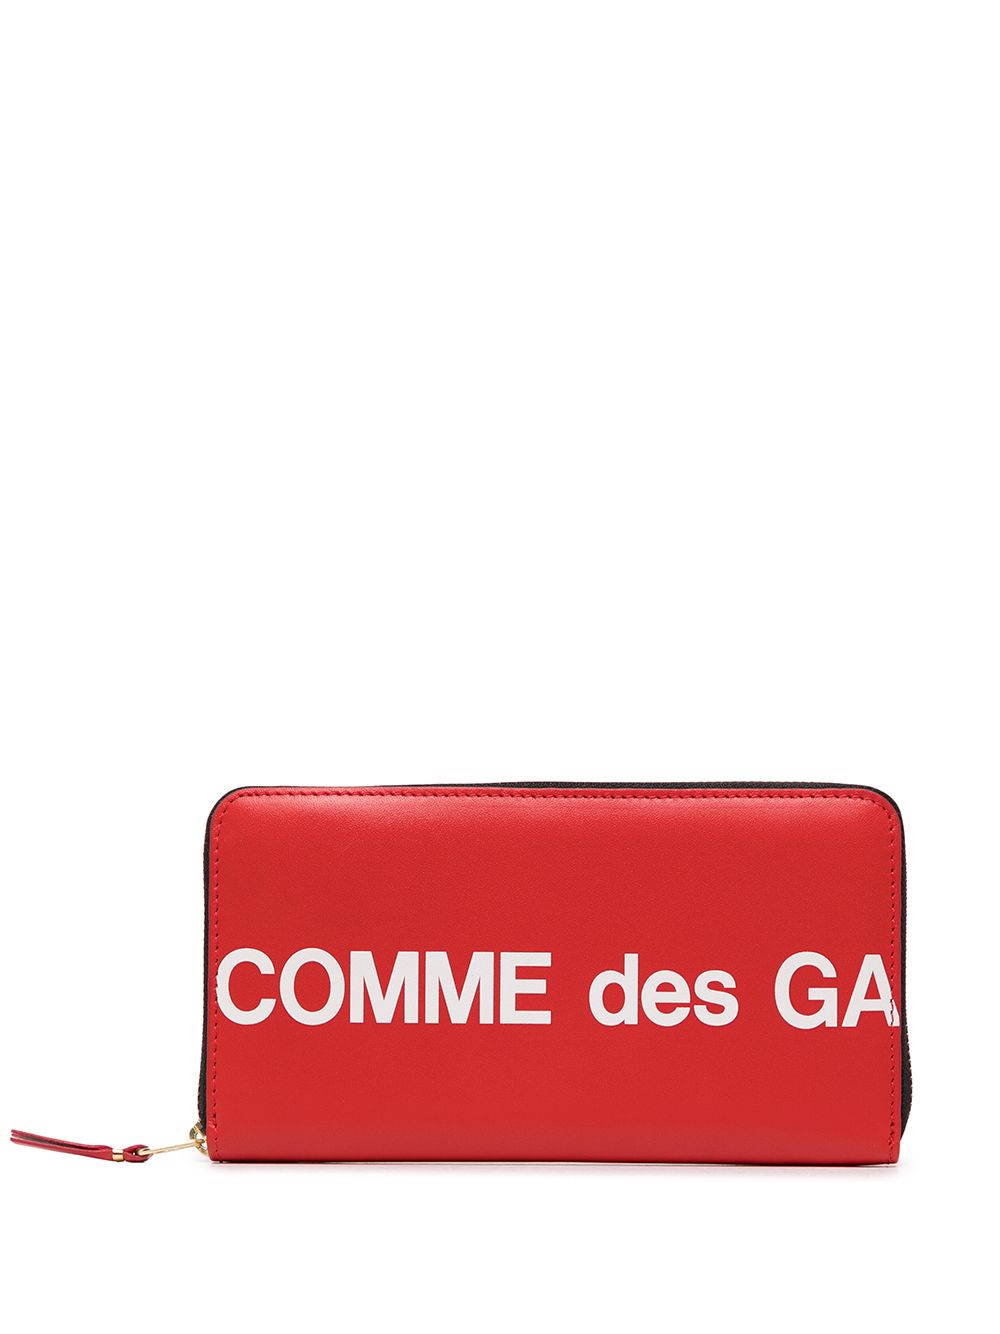 фото Comme des garçons wallet кошелек с логотипом